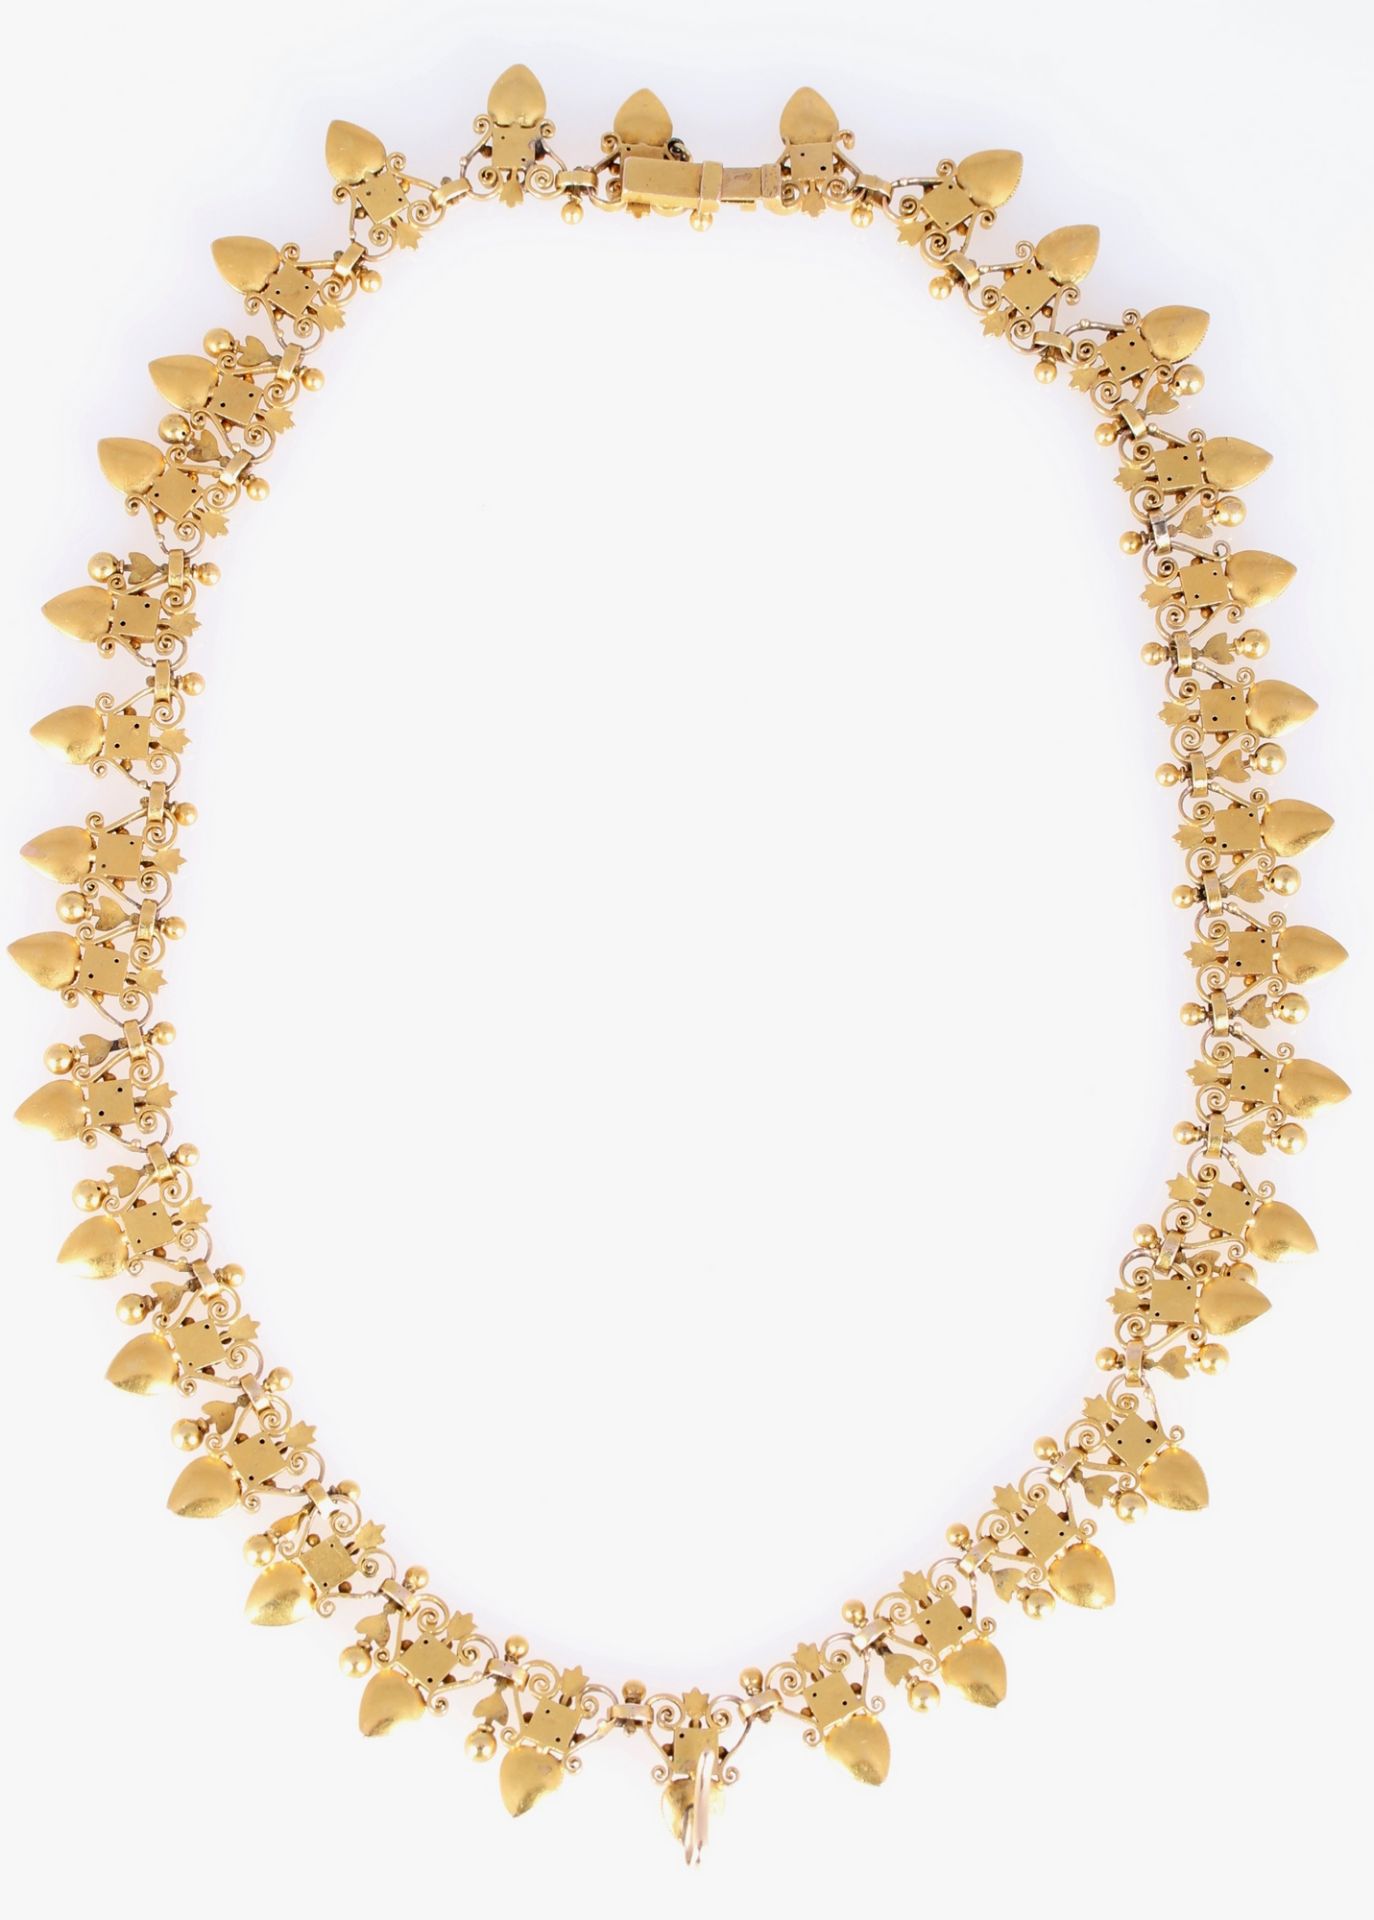 750 Gold Collier Antikschmuck 19. Jahrhundert, 18K gold necklace 19th century, - Bild 2 aus 6